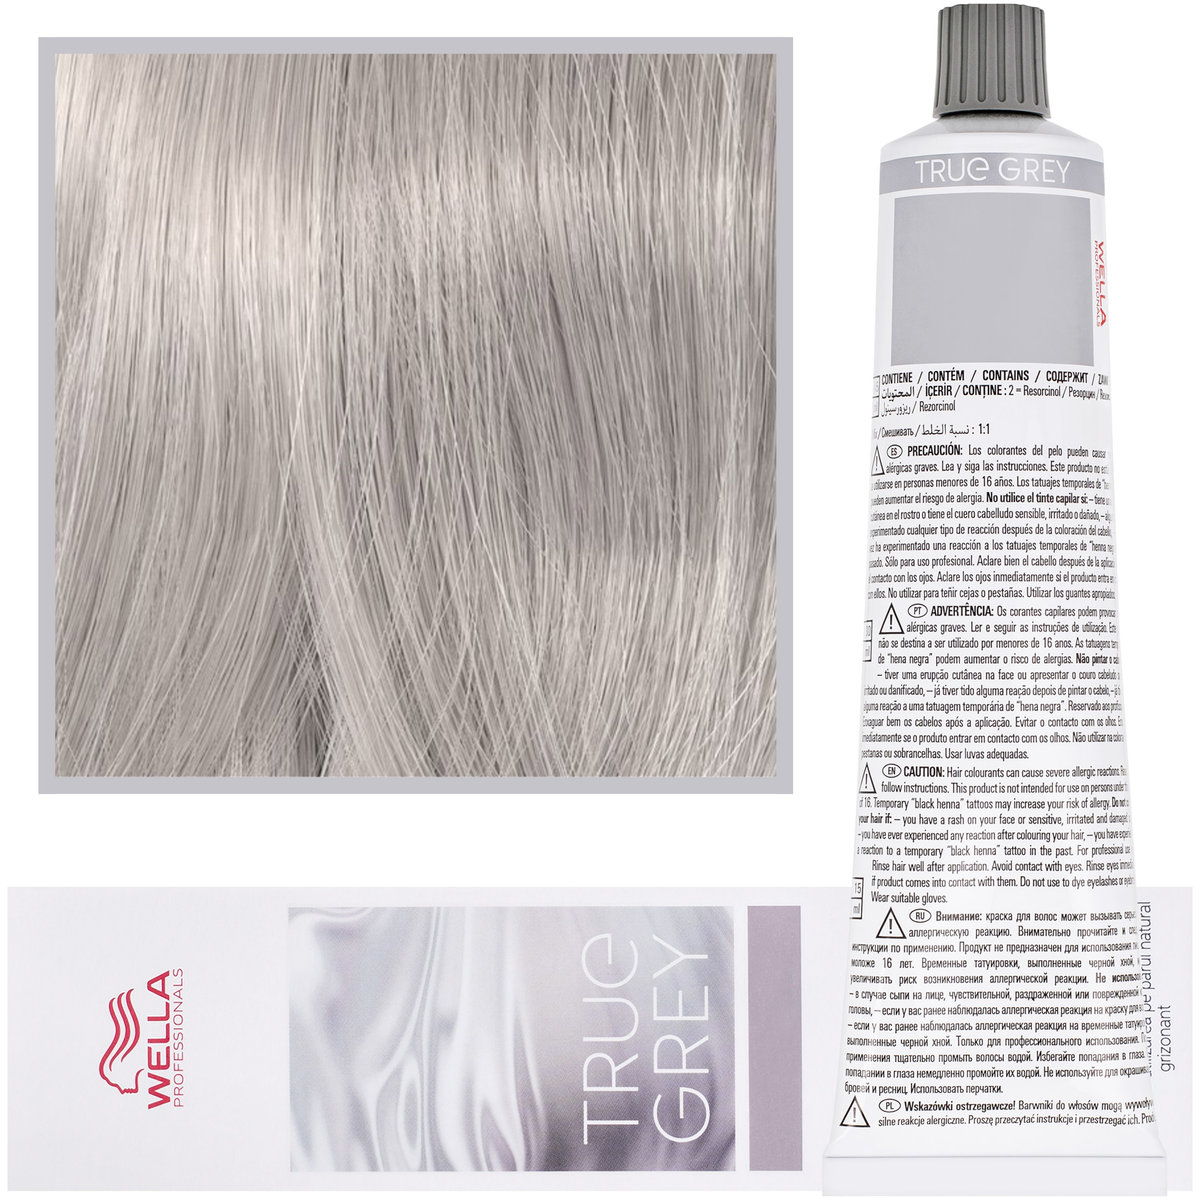 Wella True Grey Pearl Light Toner, Perłowy jasny toner mgiełka, farba utleniająca do włosów naturalnie siwych, 60ml